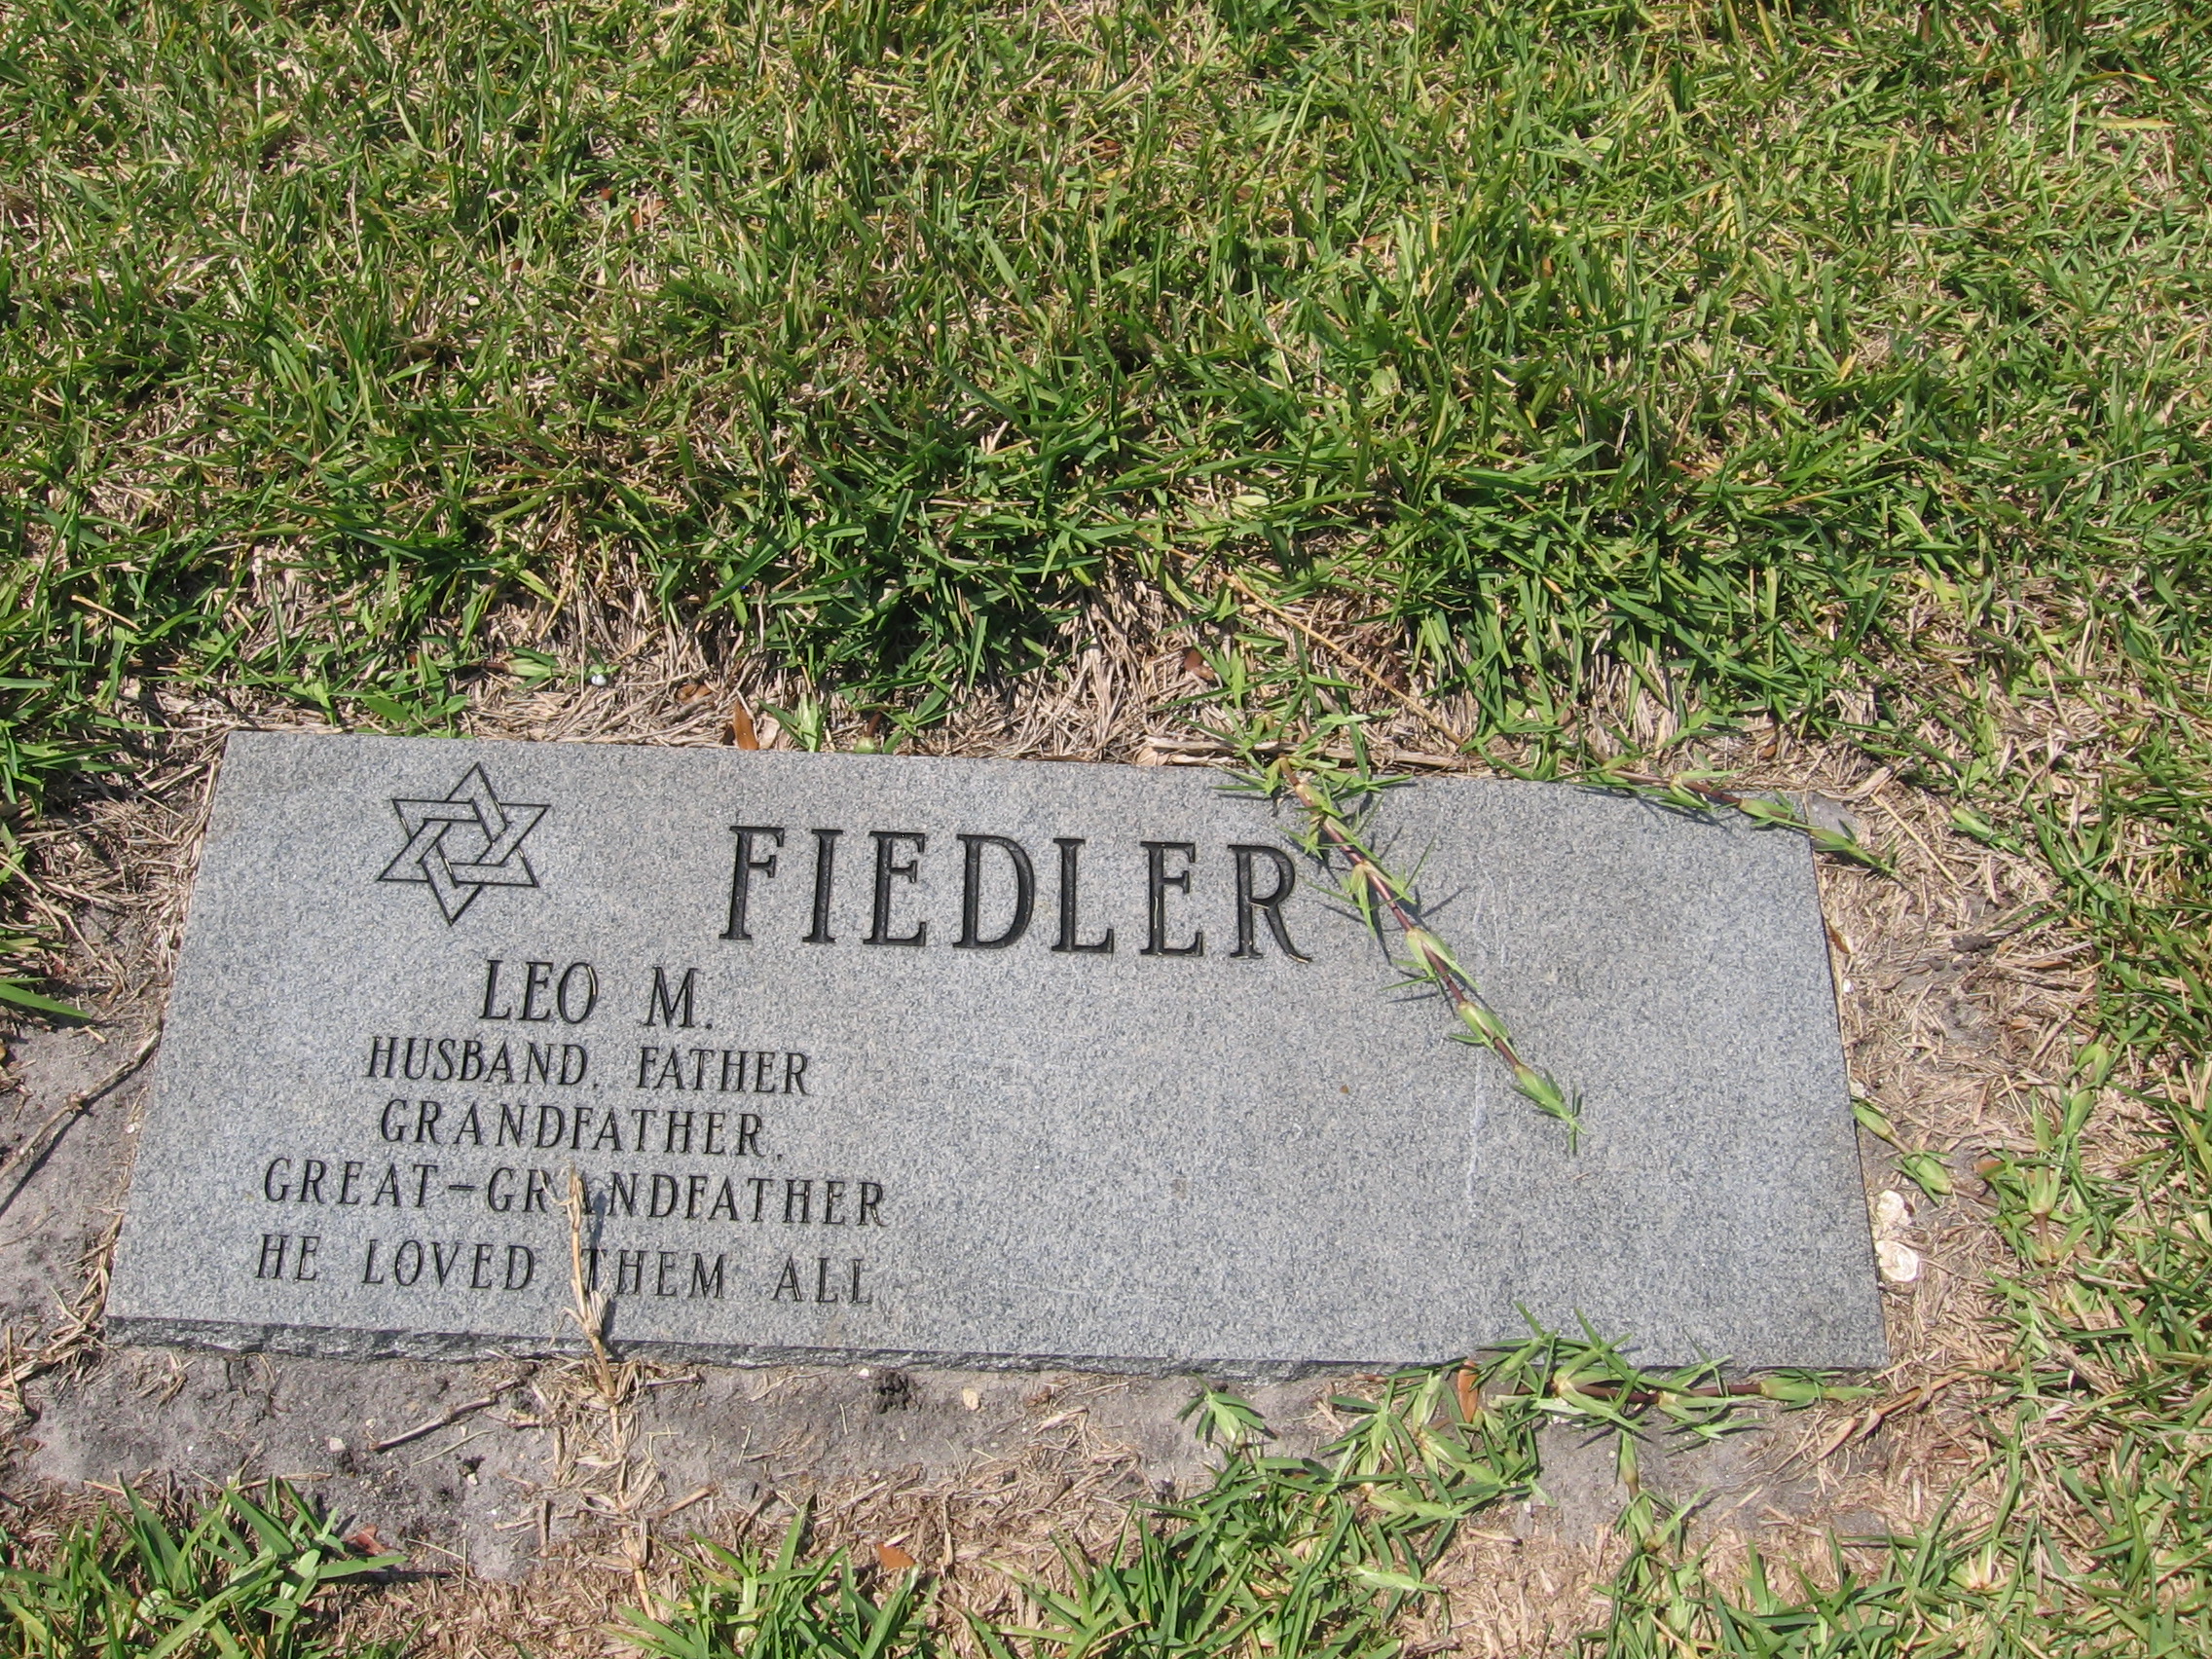 Leo M Fiedler